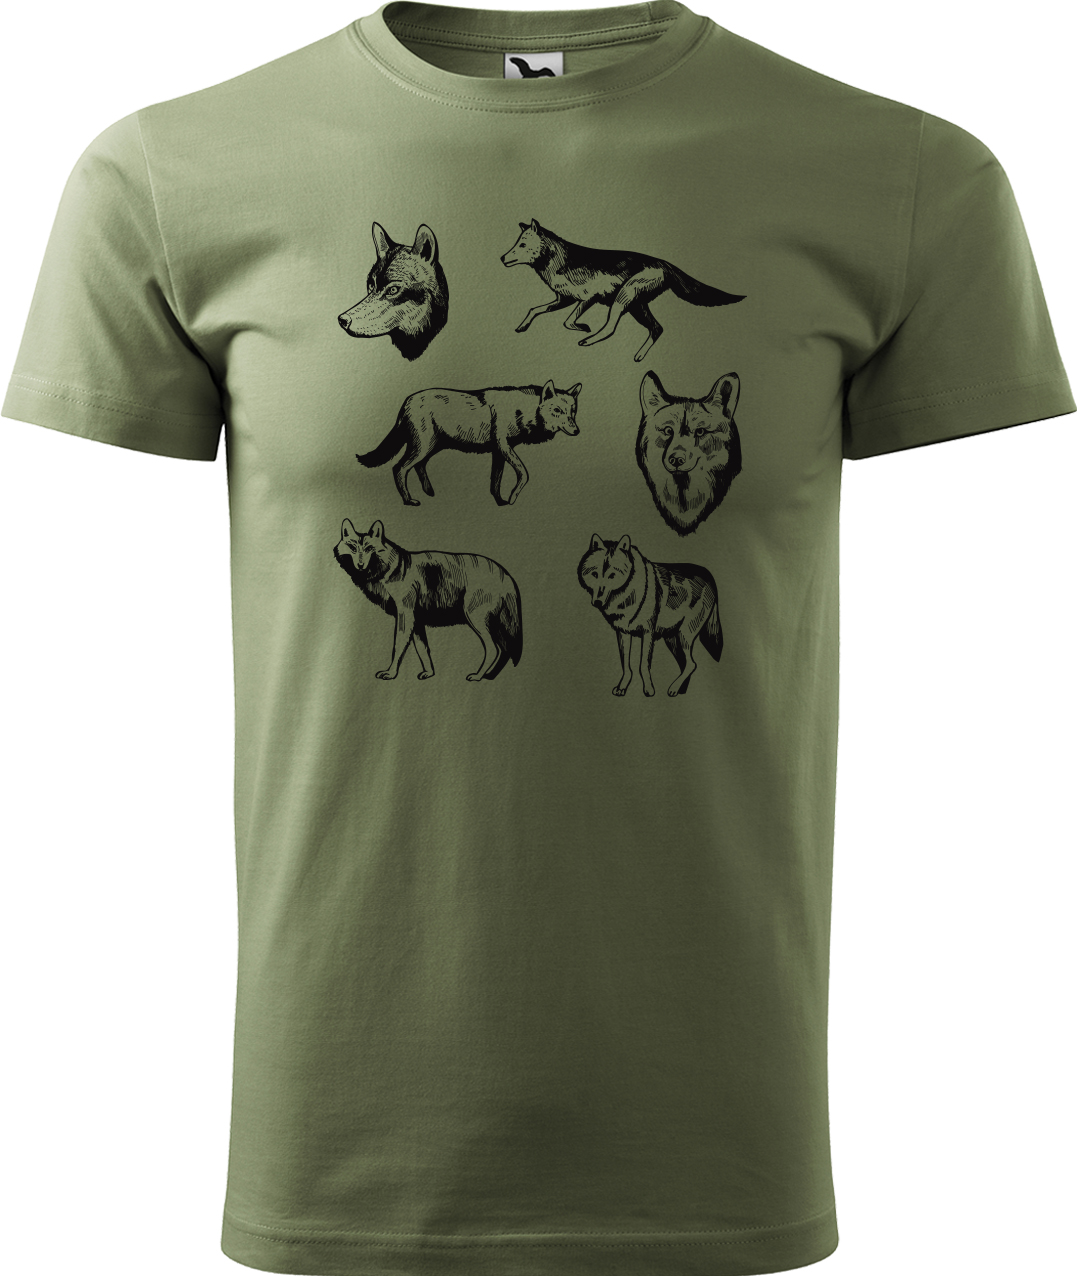 Pánské tričko s vlkem - Vlci Velikost: S, Barva: Světlá khaki (28), Střih: pánský